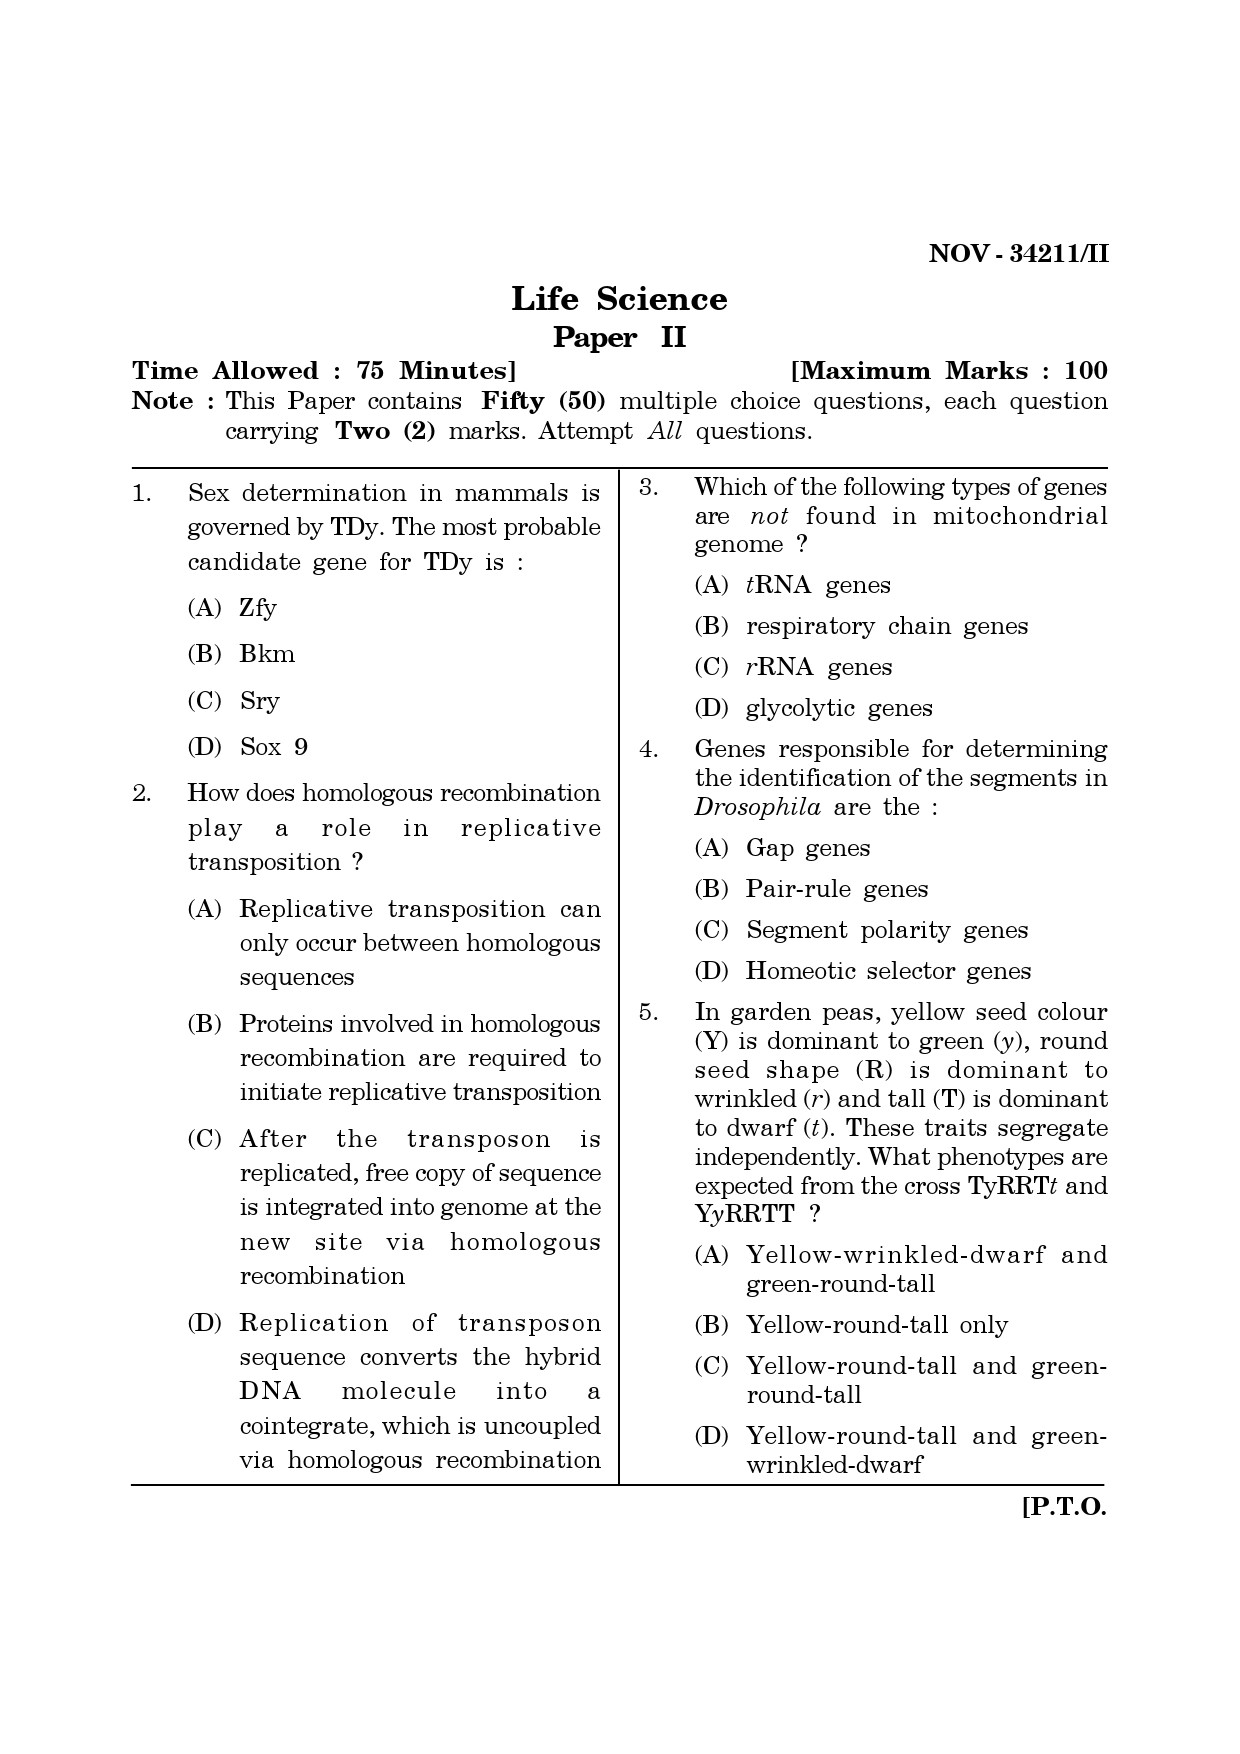 Maharashtra SET Life Sciences Question Paper II November 2011 1